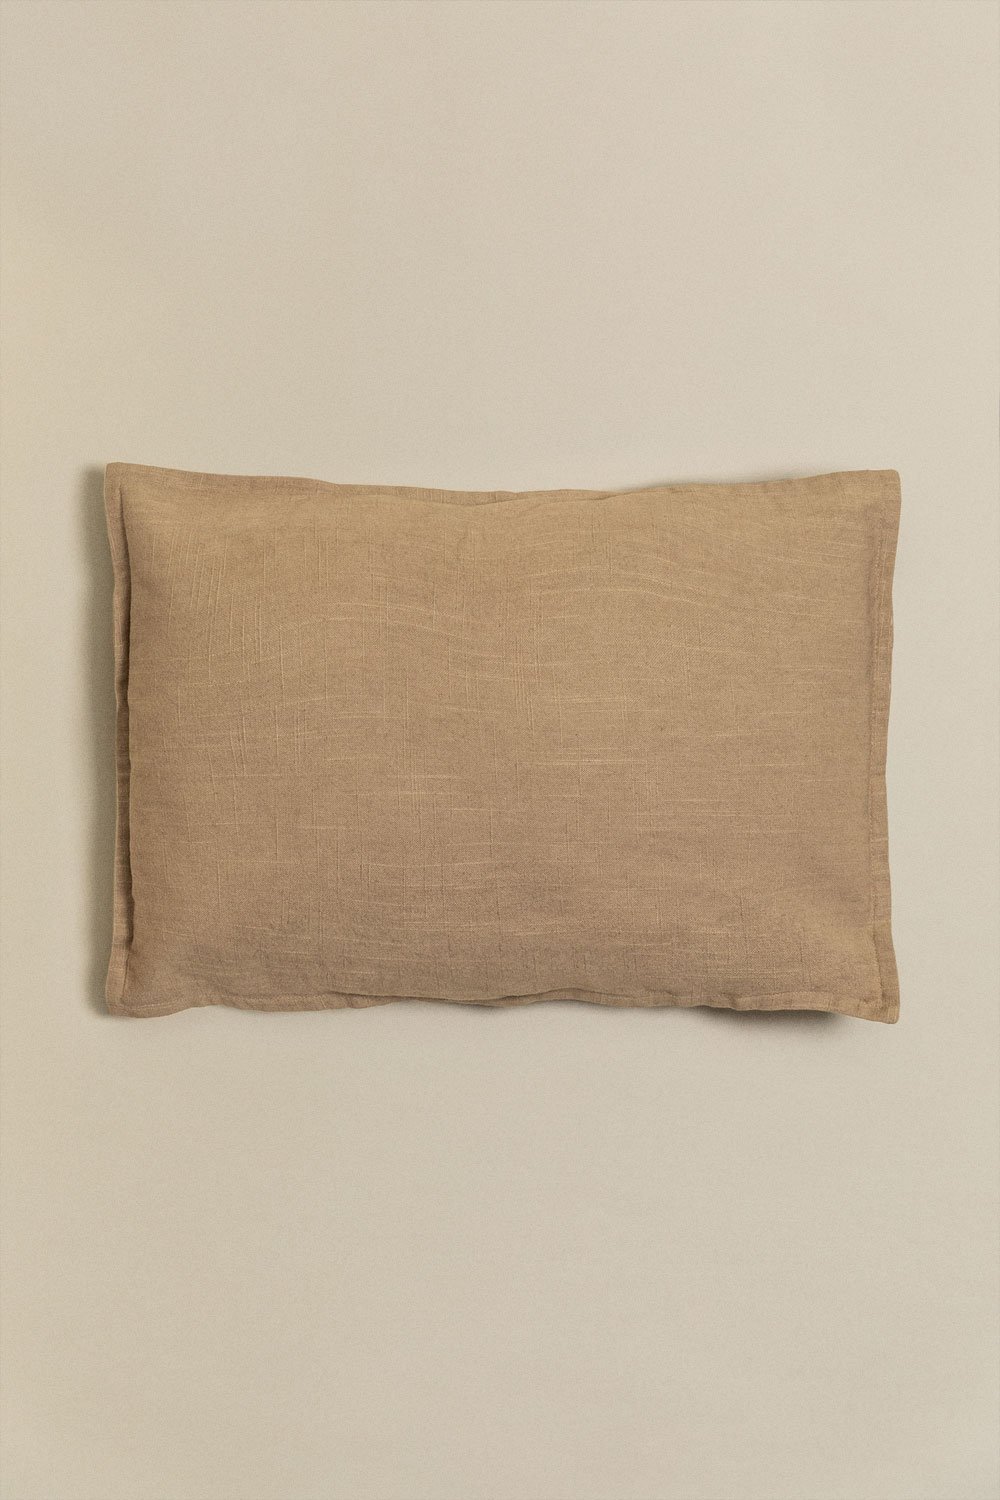 Almofada Retangular de Algodão (35x50 cm) Guillaume, imagem de galeria 1